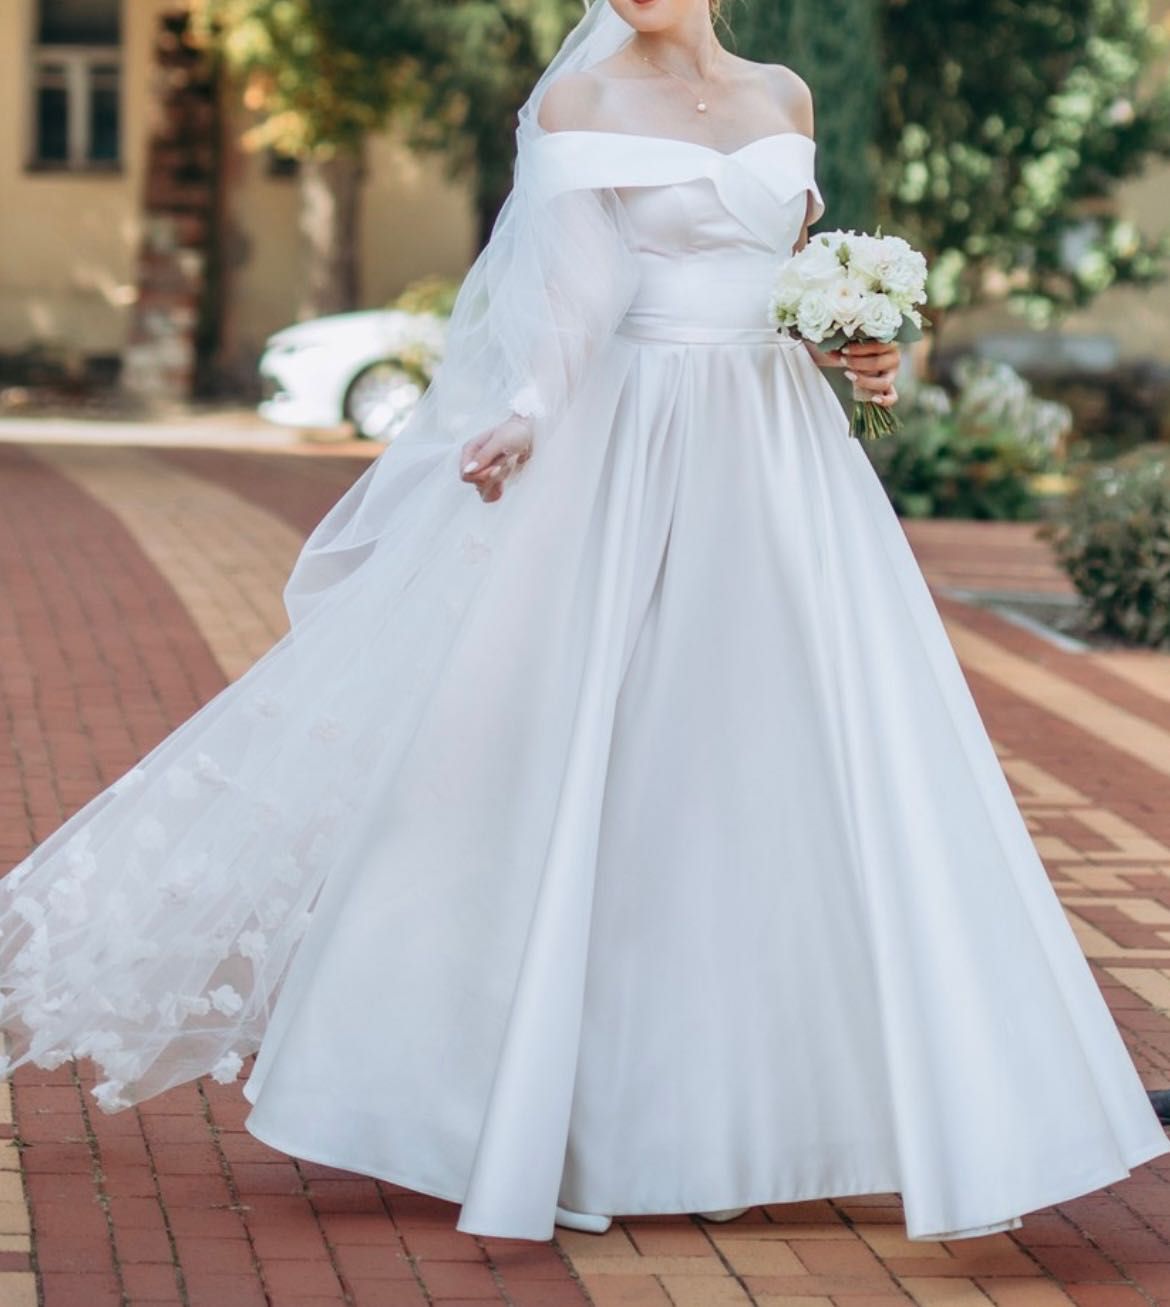 Салонна атласна весільна сукня в класичному стилі